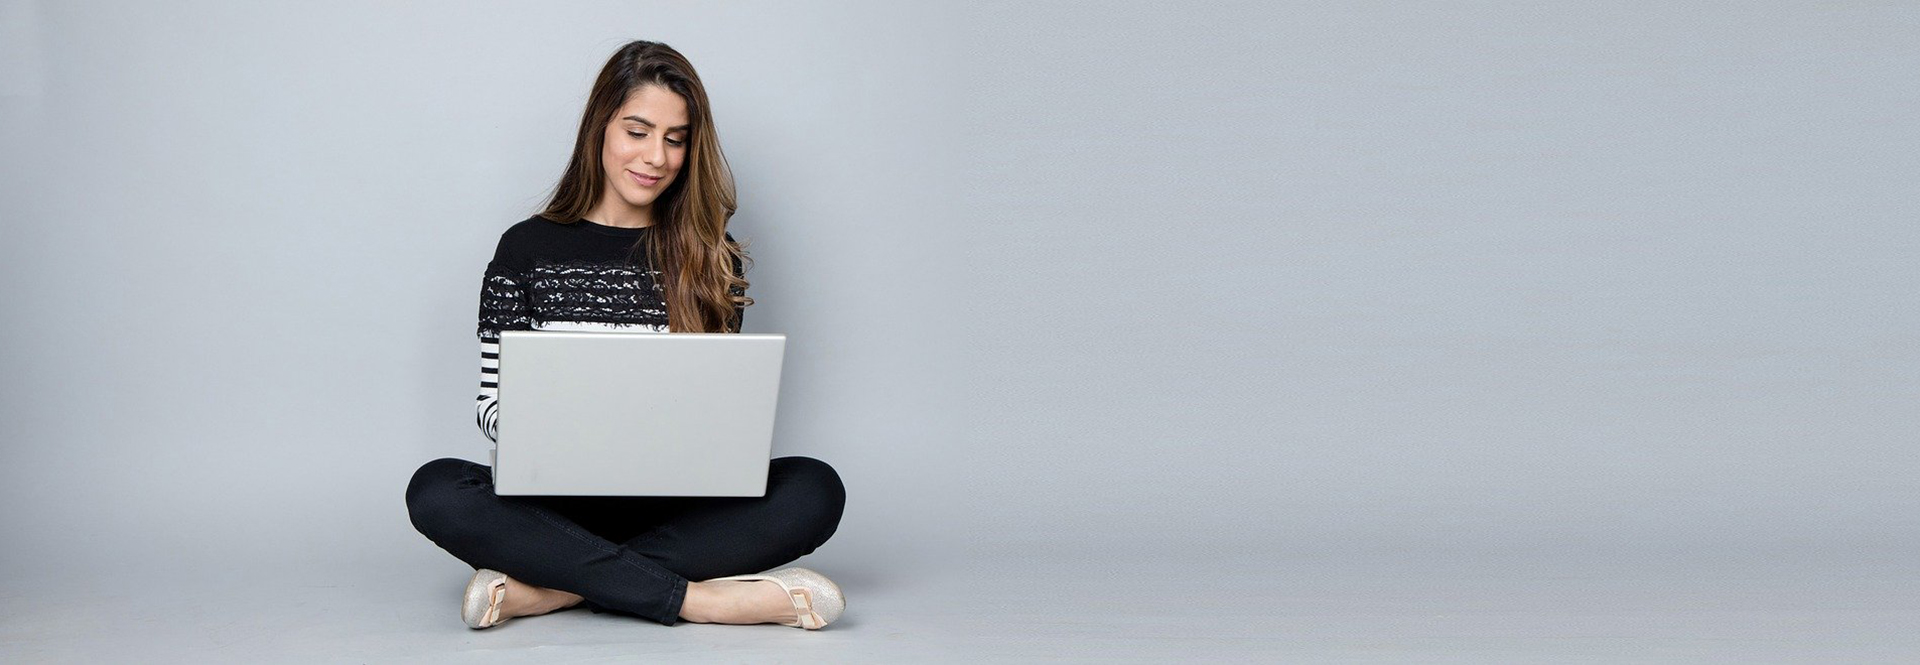 Frau mit Laptop im Schneidersitz vor grauer Wand